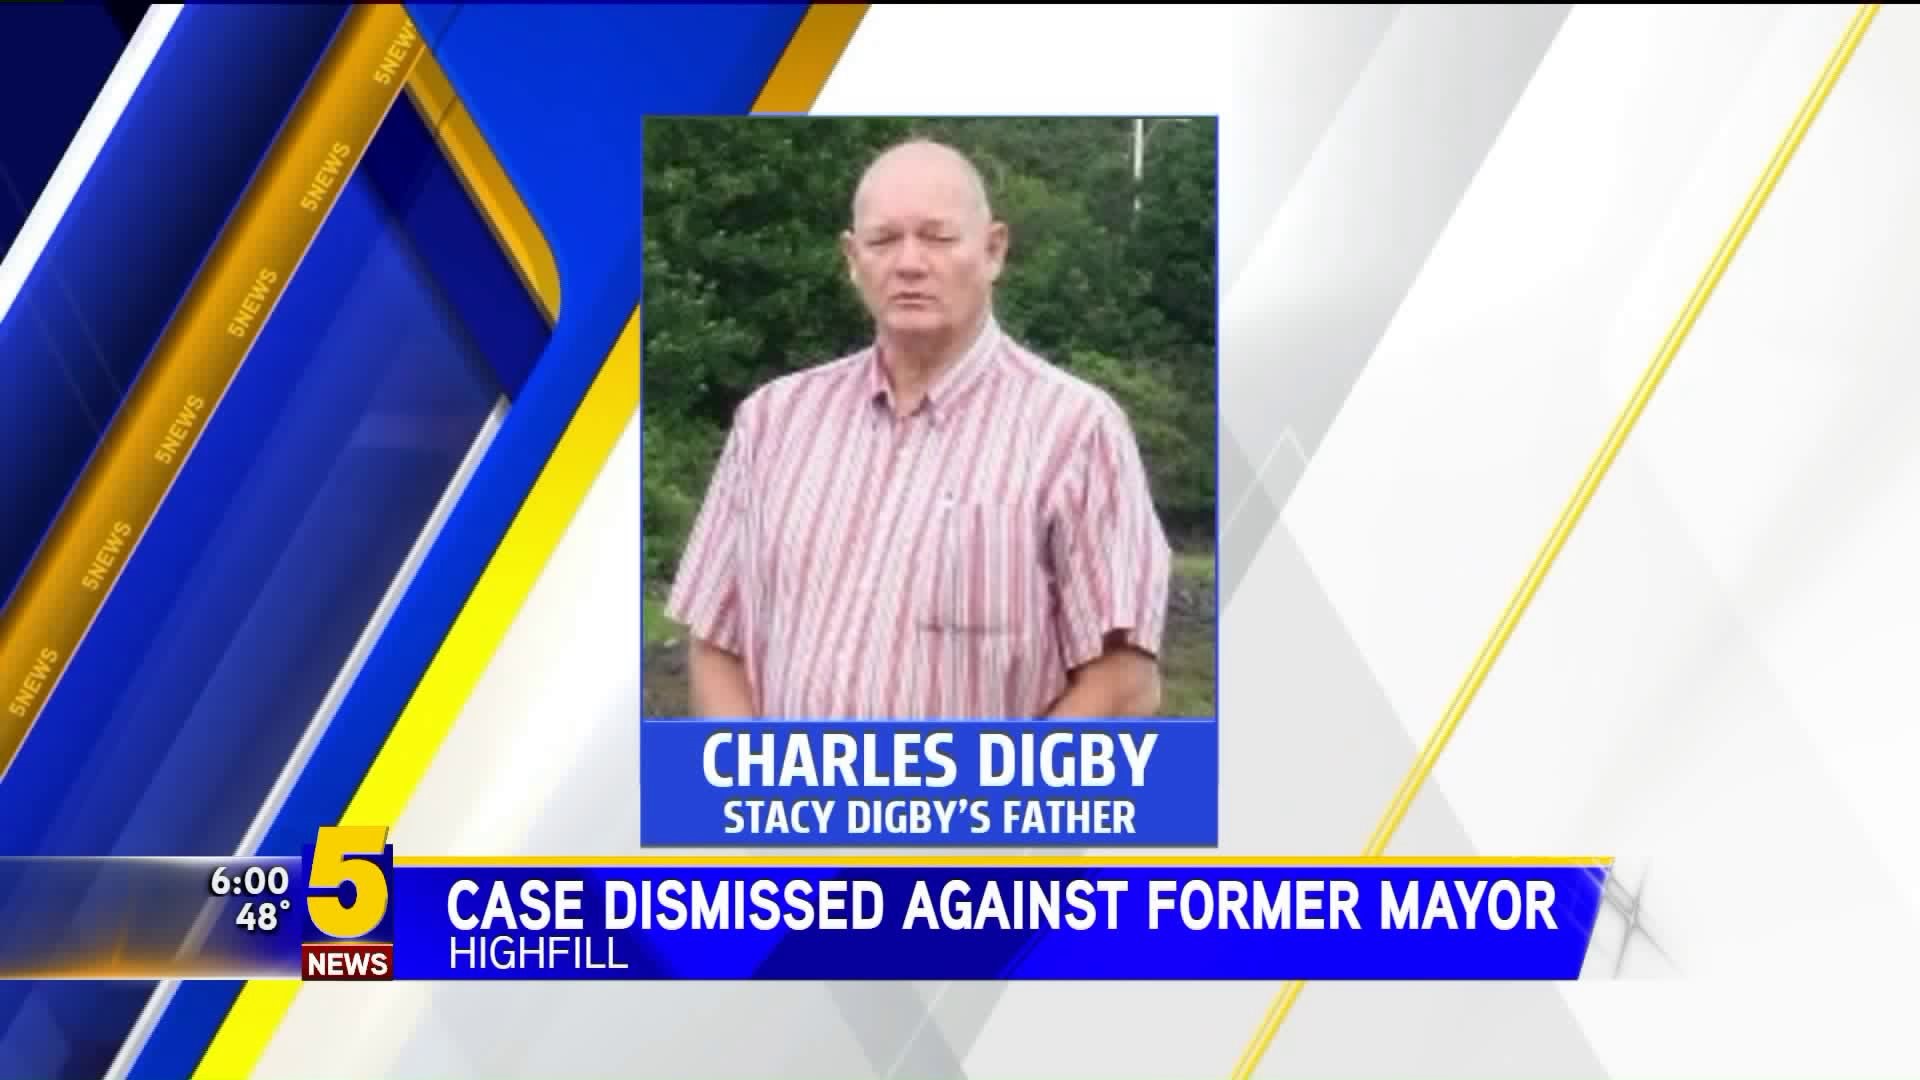 Case Dismissed Against Former Mayor